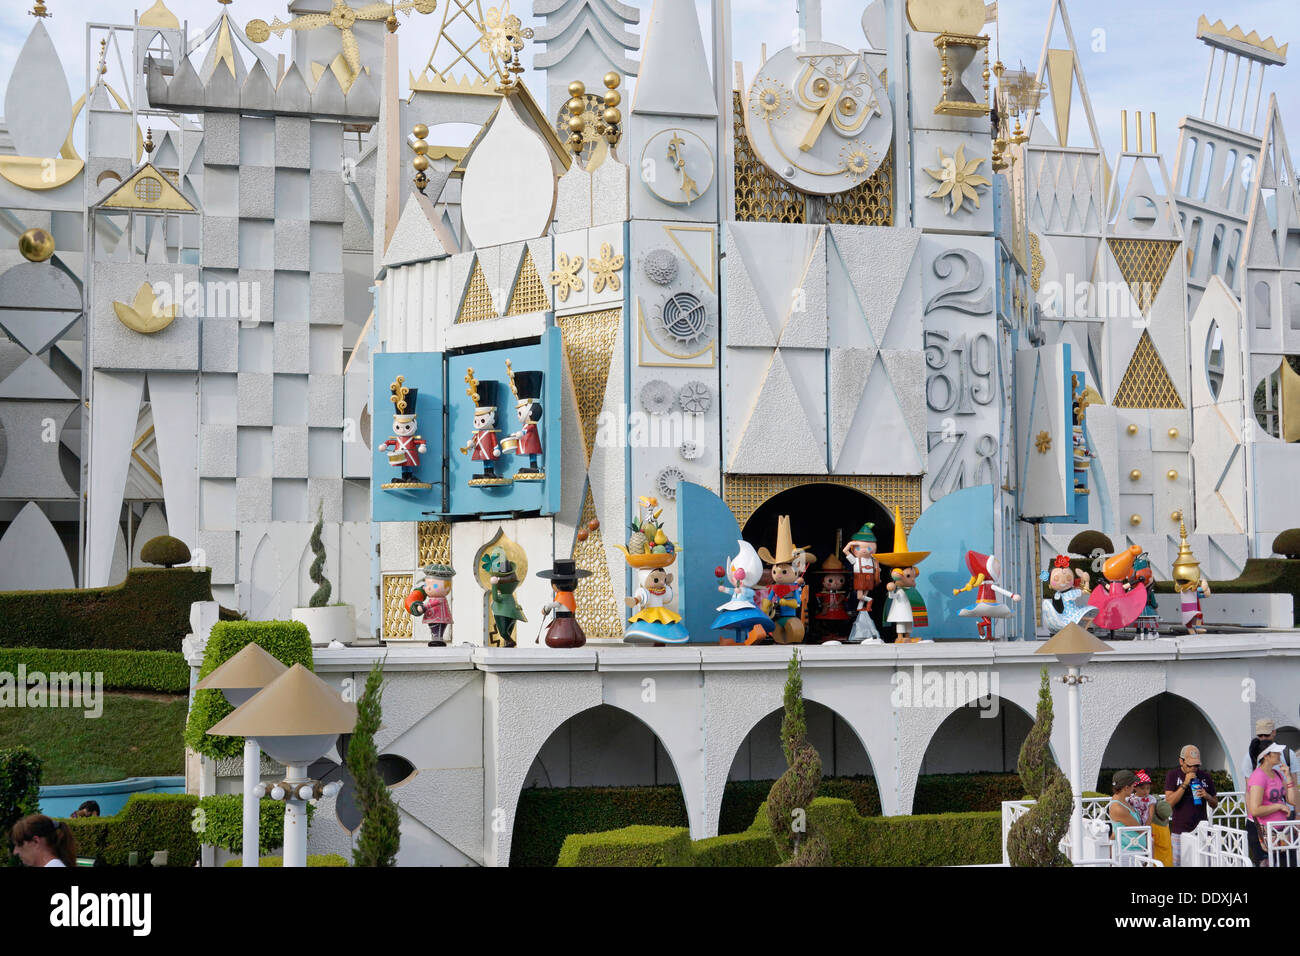 C'est un petit monde, Disneyland Resort, Fantasyland, Magic Kingdom, en Californie Banque D'Images